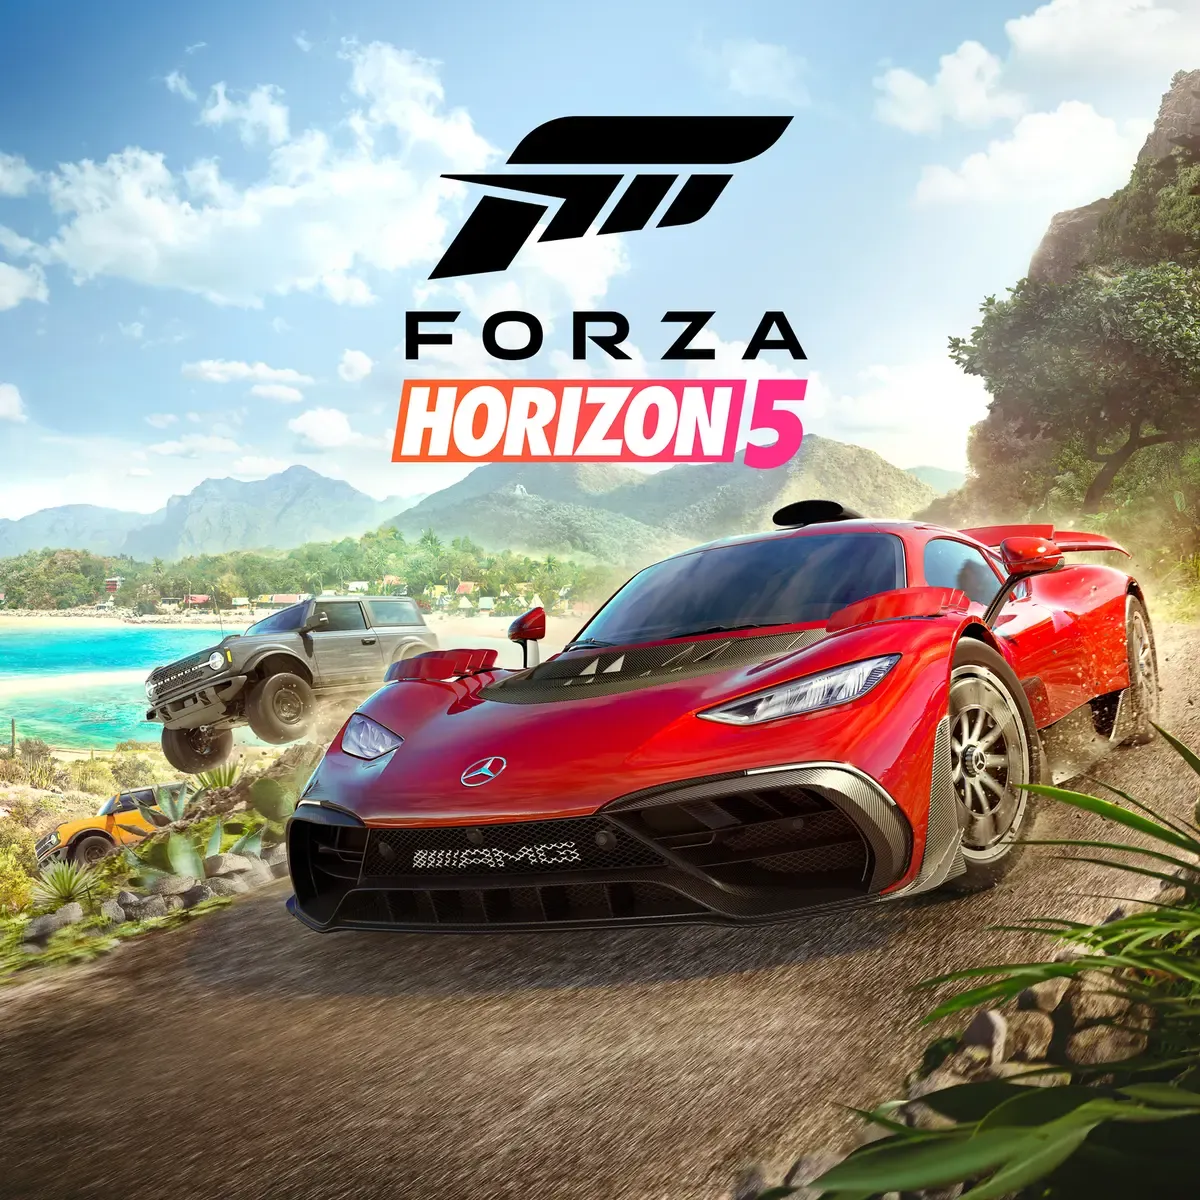 Forza Horizon 5 (PC) EU Xbox One/Series/Windows | Xbox Live Key - EUROPE